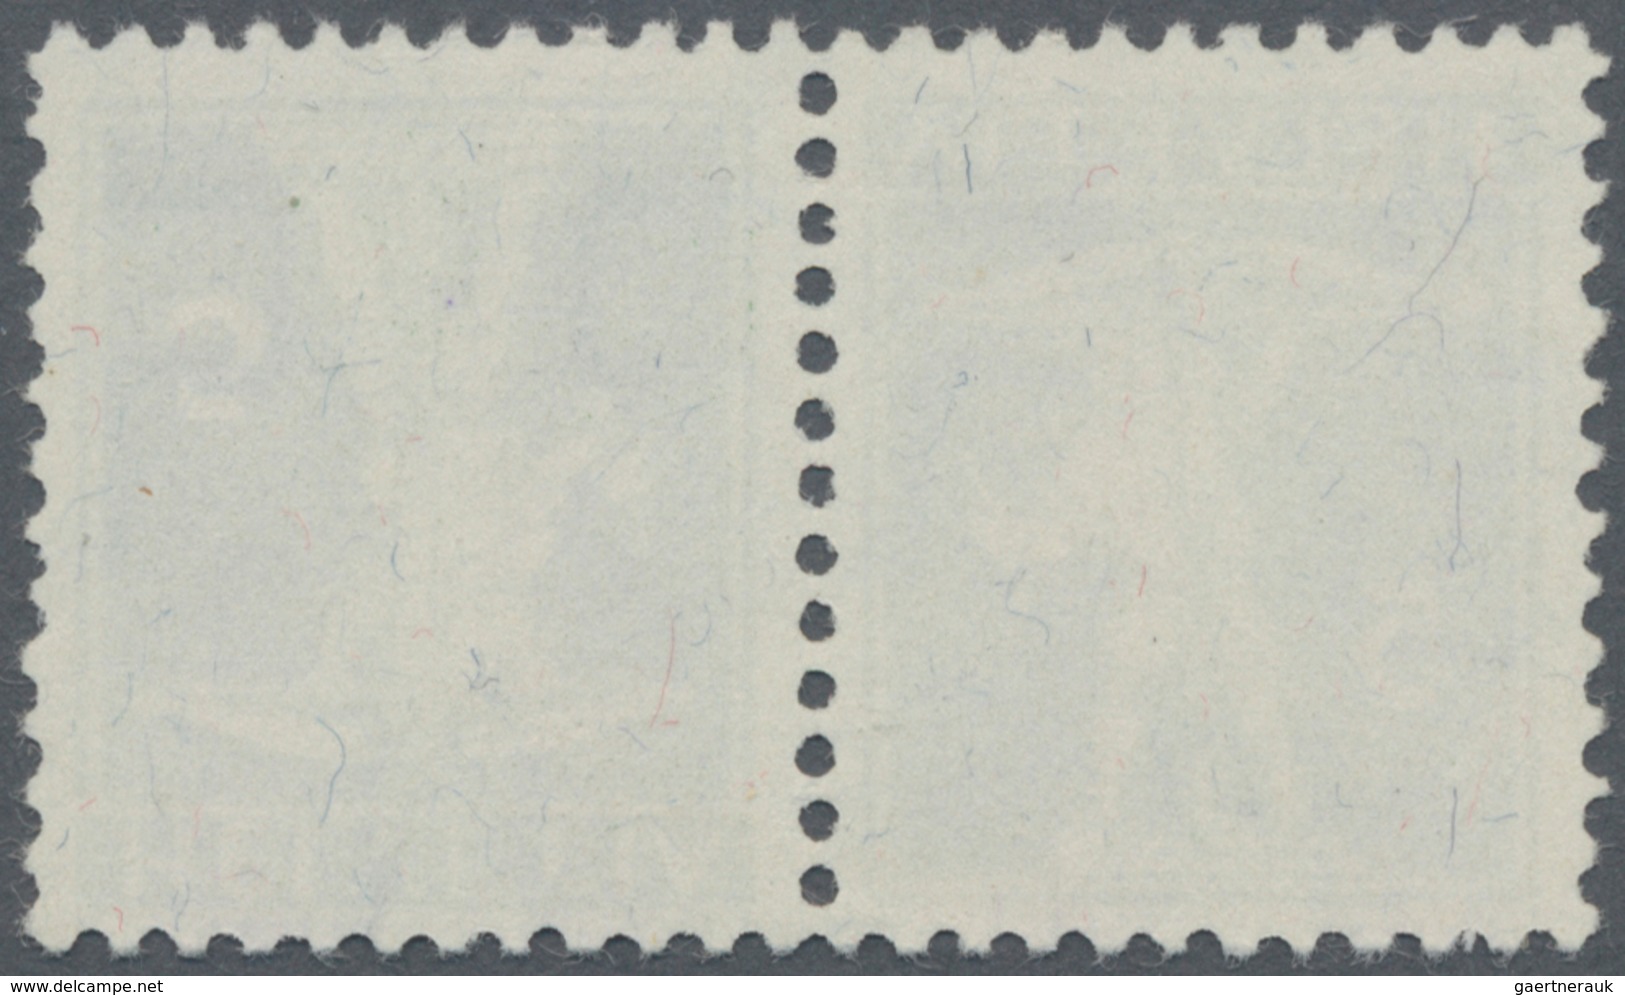 Schweiz - Zusammendrucke: 1910 Tellknabe 5 Rp. In Type II, Im Kehrdruckpaar, Entwertet Mit Teilabsch - Zusammendrucke